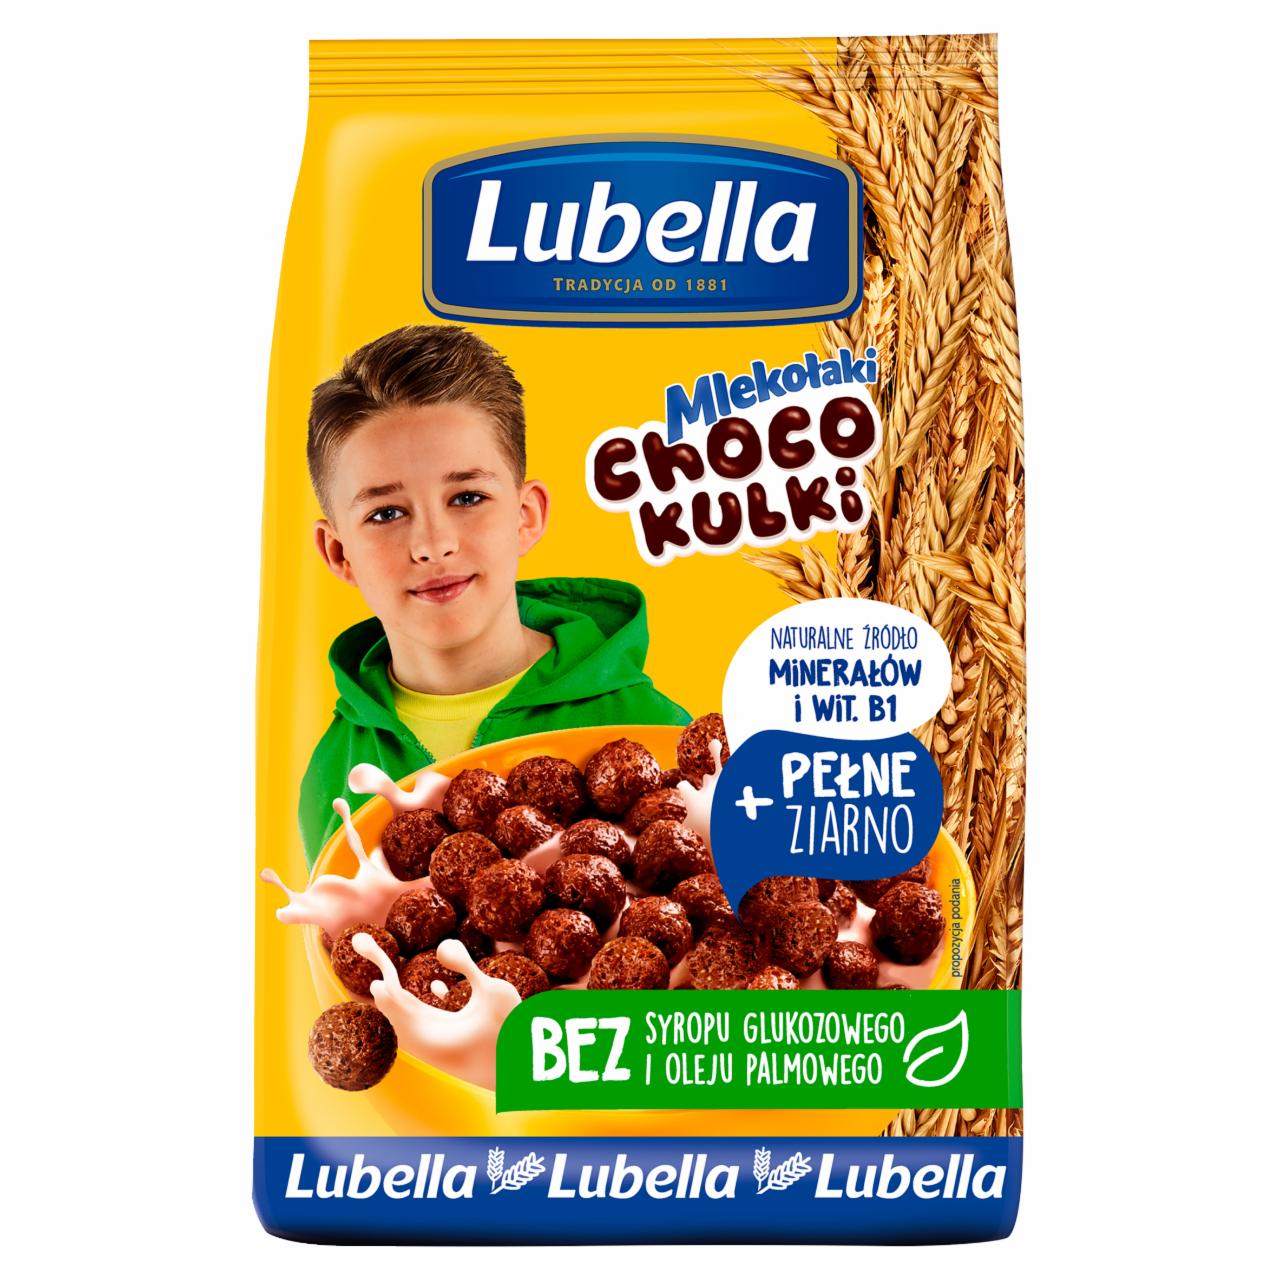 Zdjęcia - Lubella Choco kulki Zbożowe kulki o smaku czekoladowym 500 g